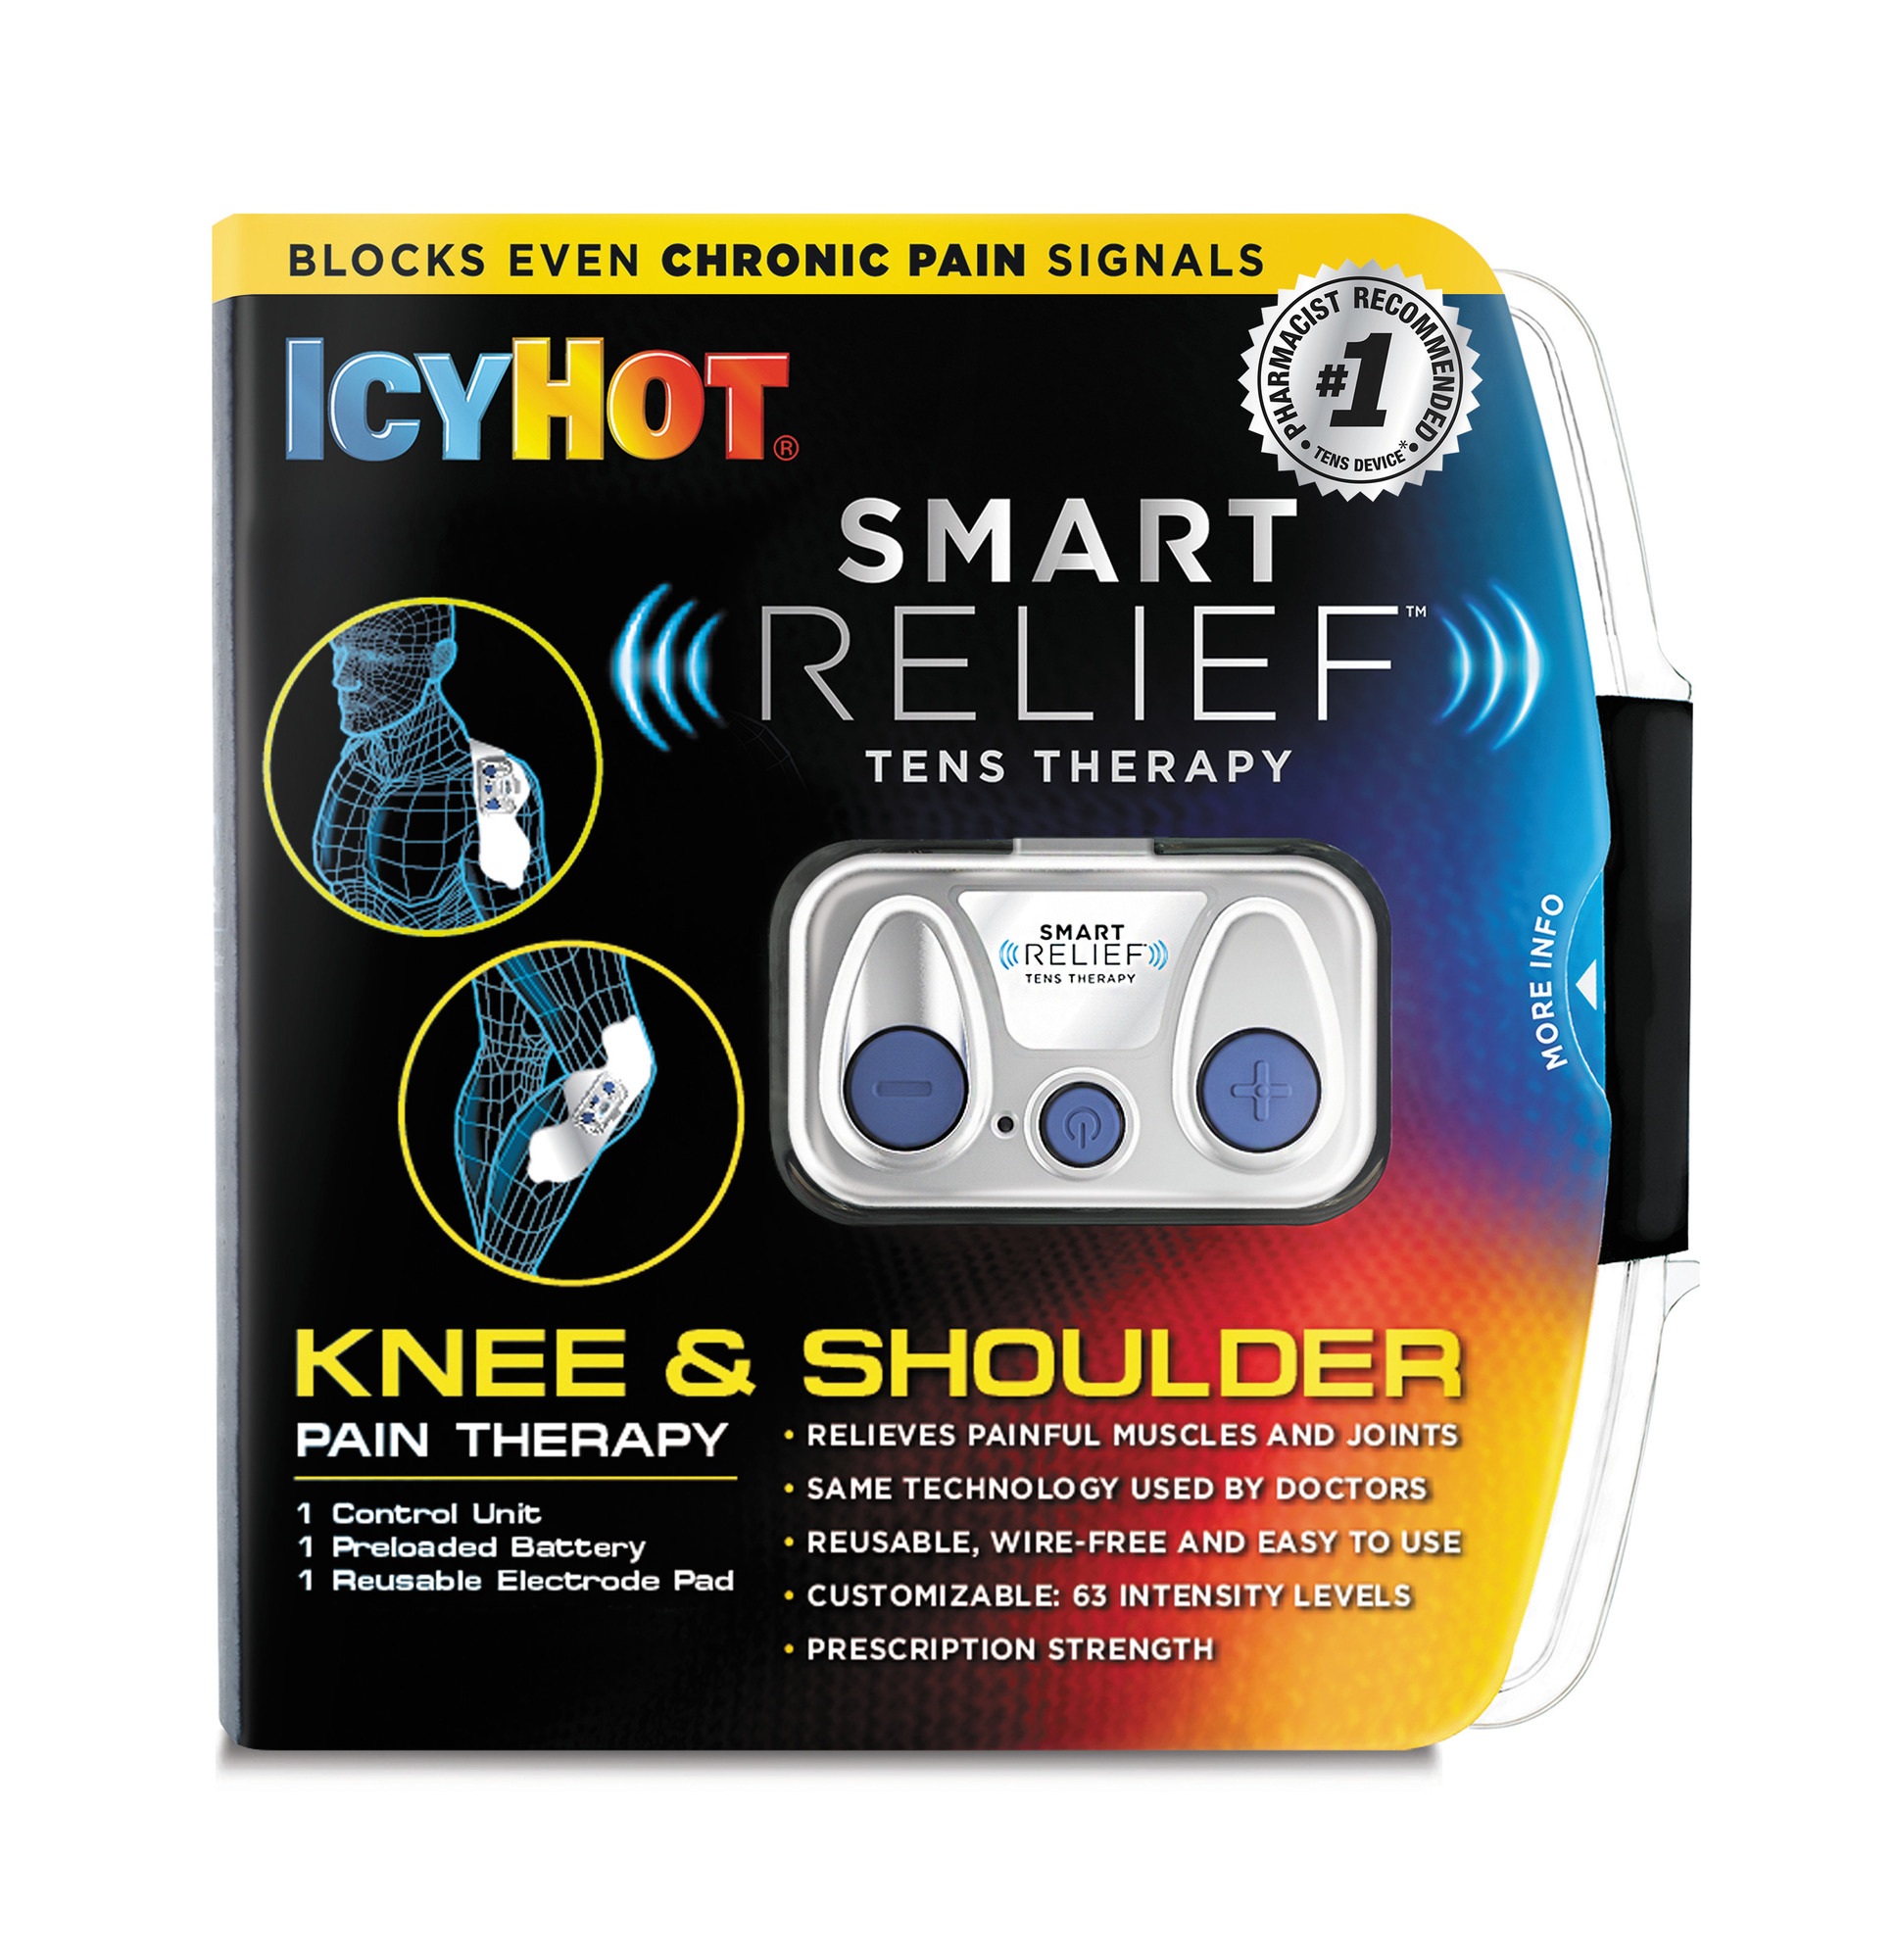 Icy Hot Smart Relief TENS